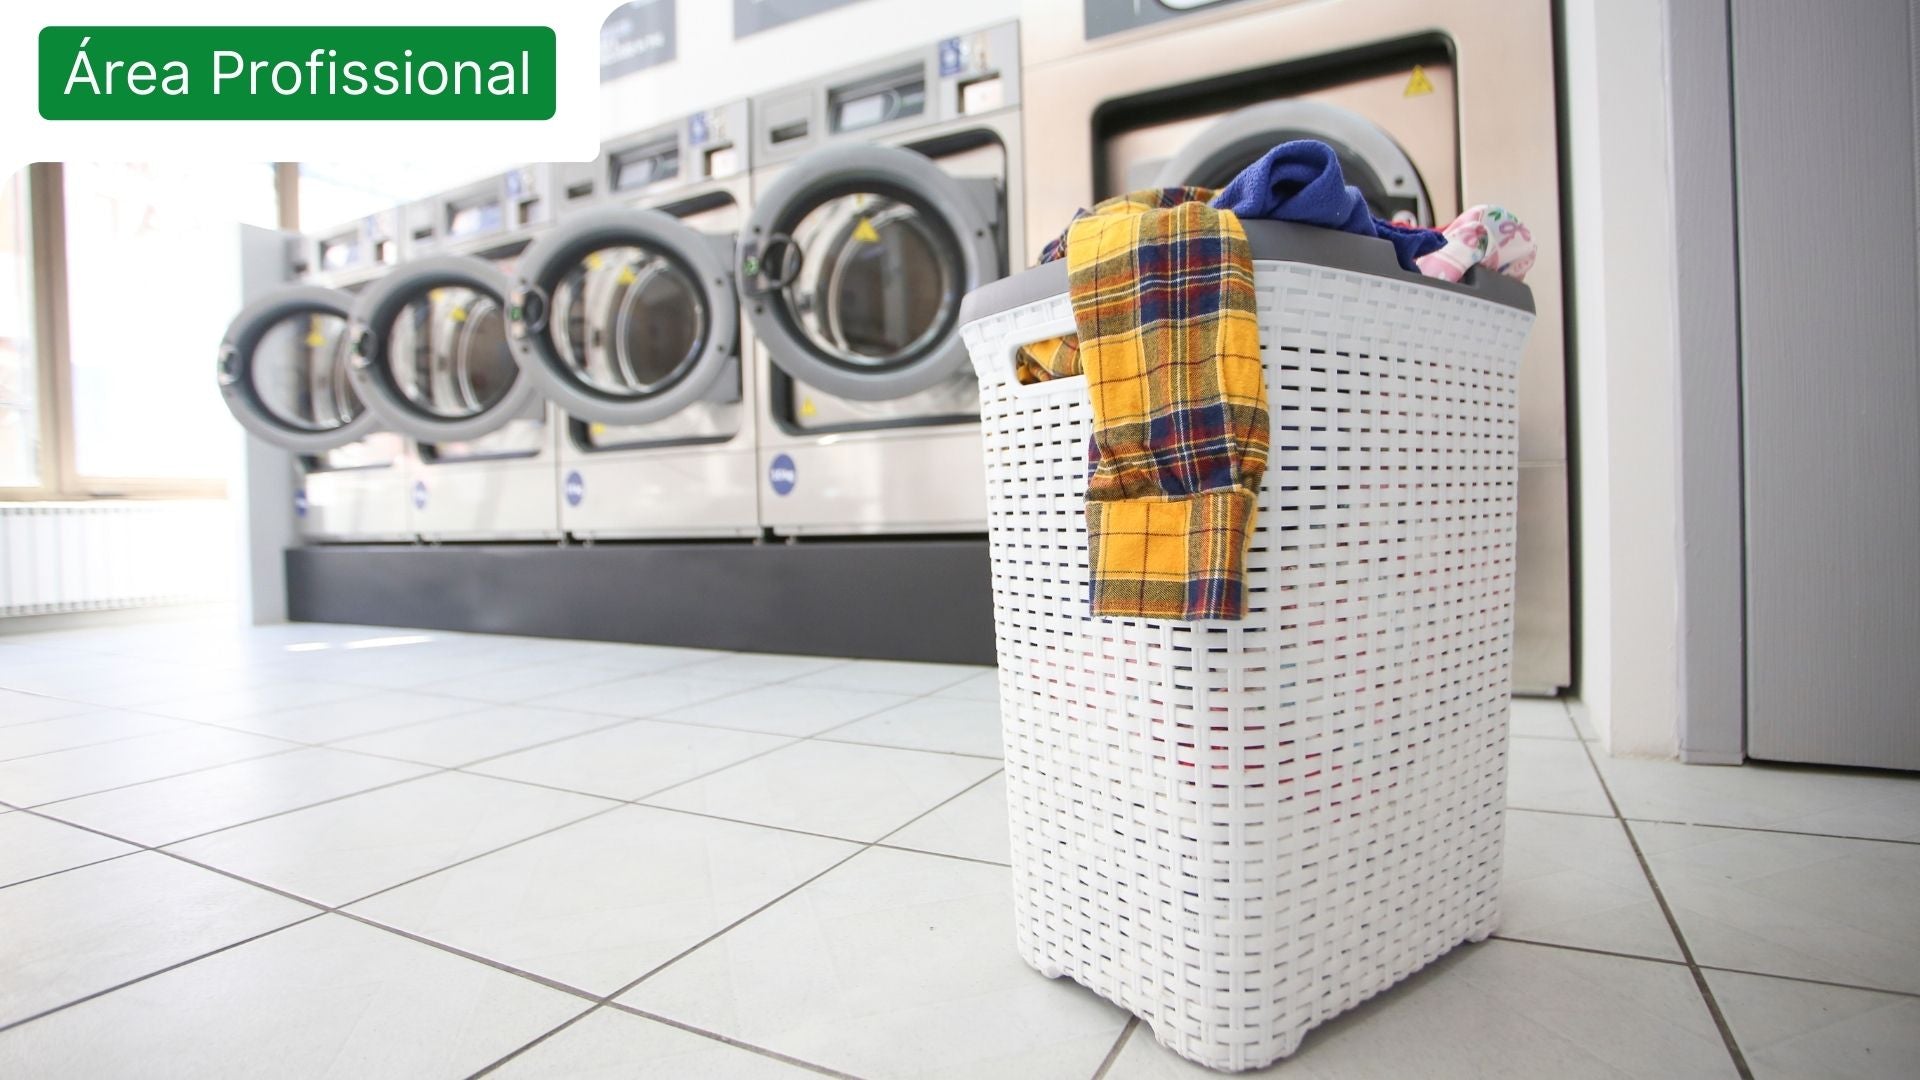 Lavandaria com máquinas e cesto de roupa suja para destacar o tema do detergente de roupa para a área profissional